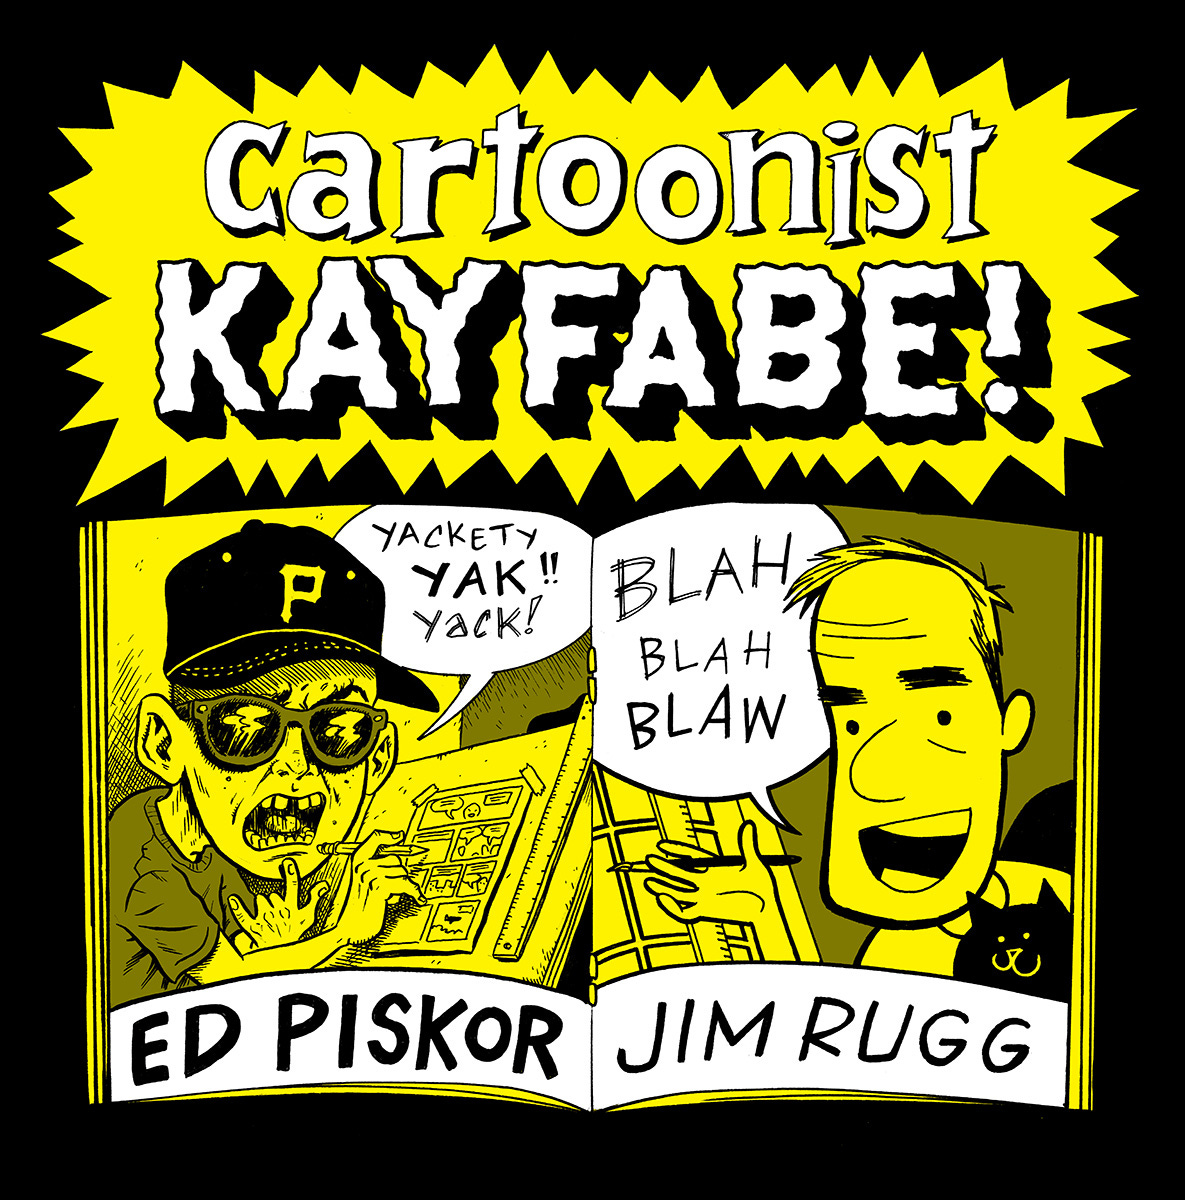 Cartoonist Kayfabe Newsletter